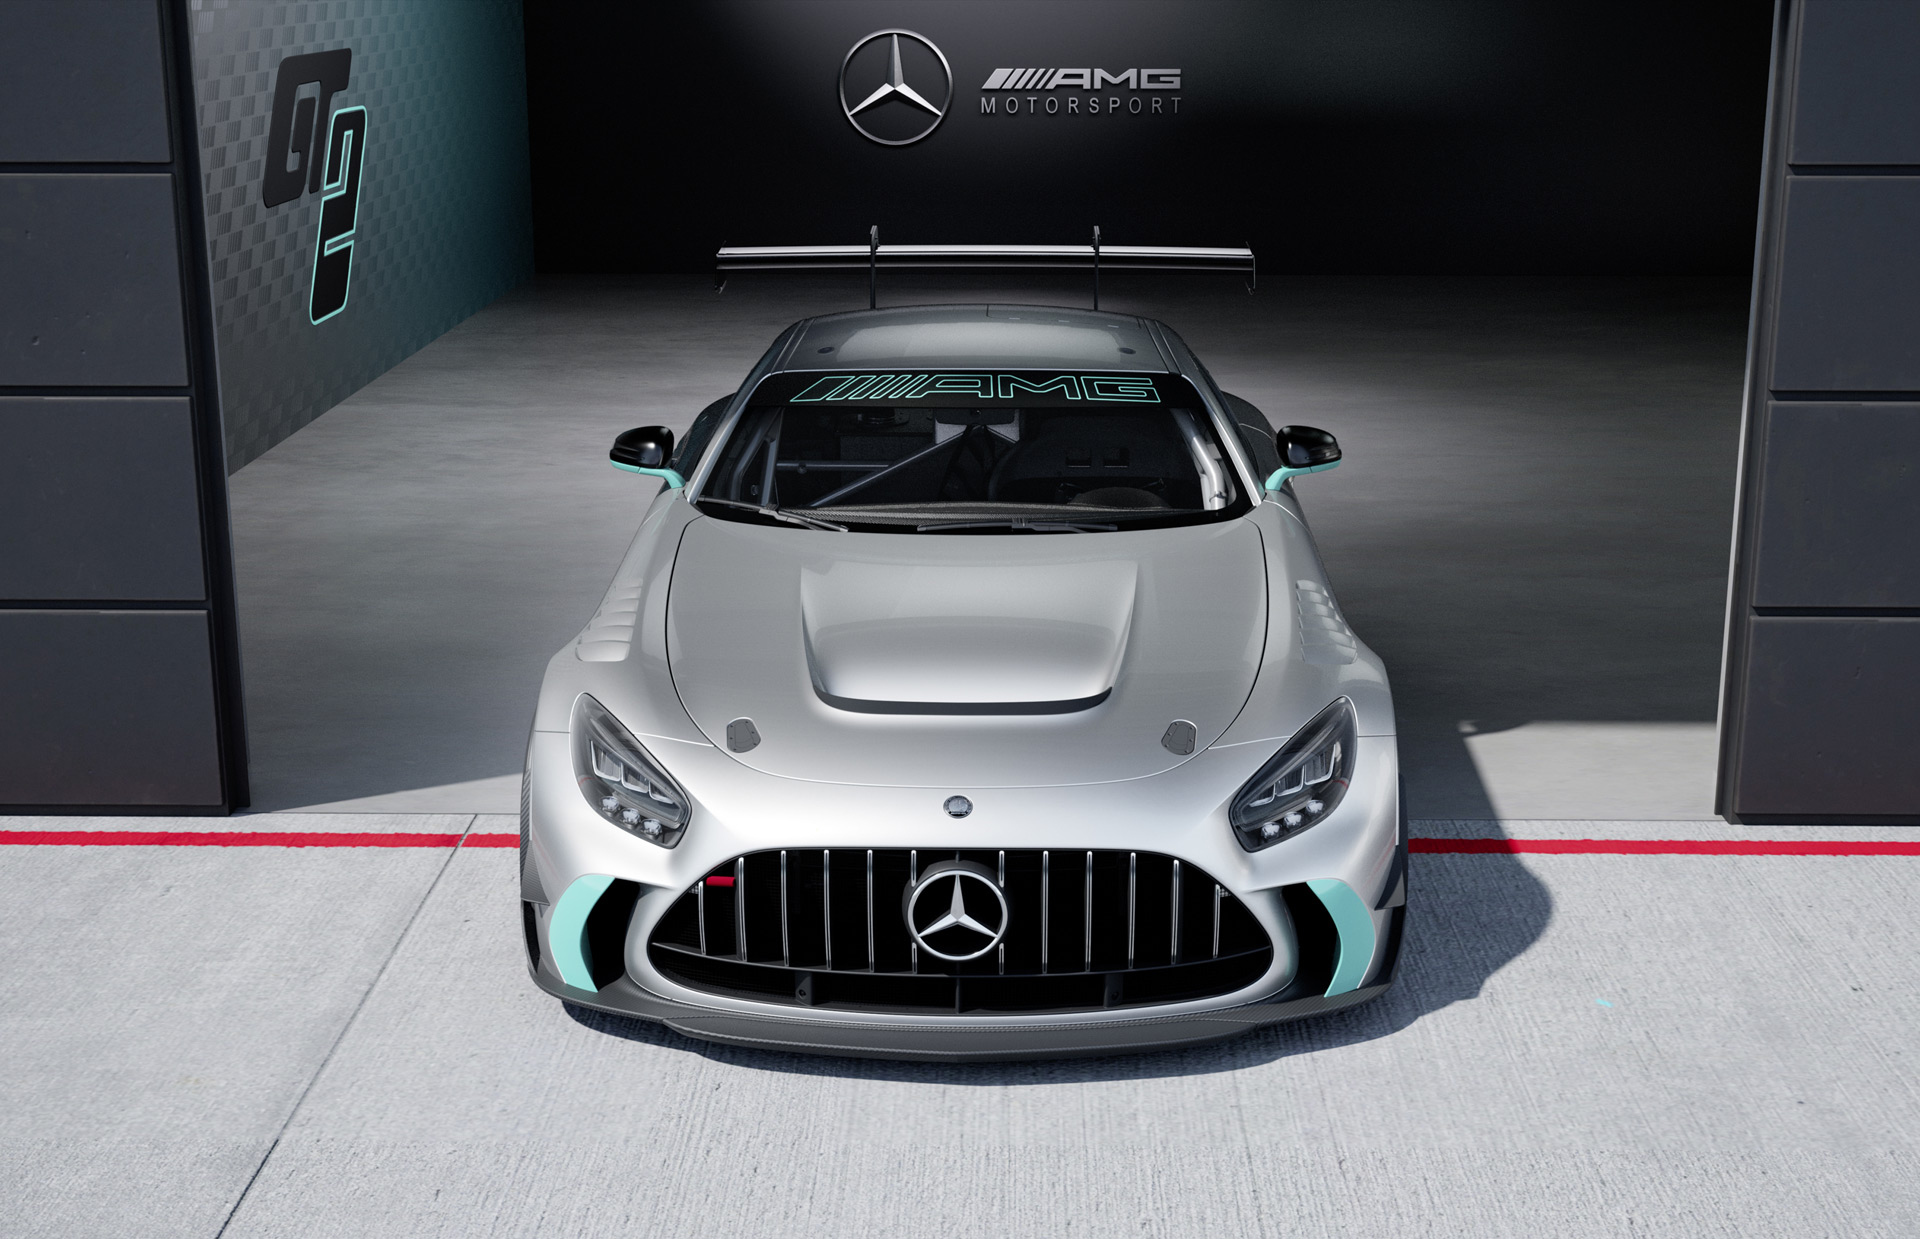 2023 Mercedes-Benz AMG GT2, Fisker Ronin: Car News Headlines